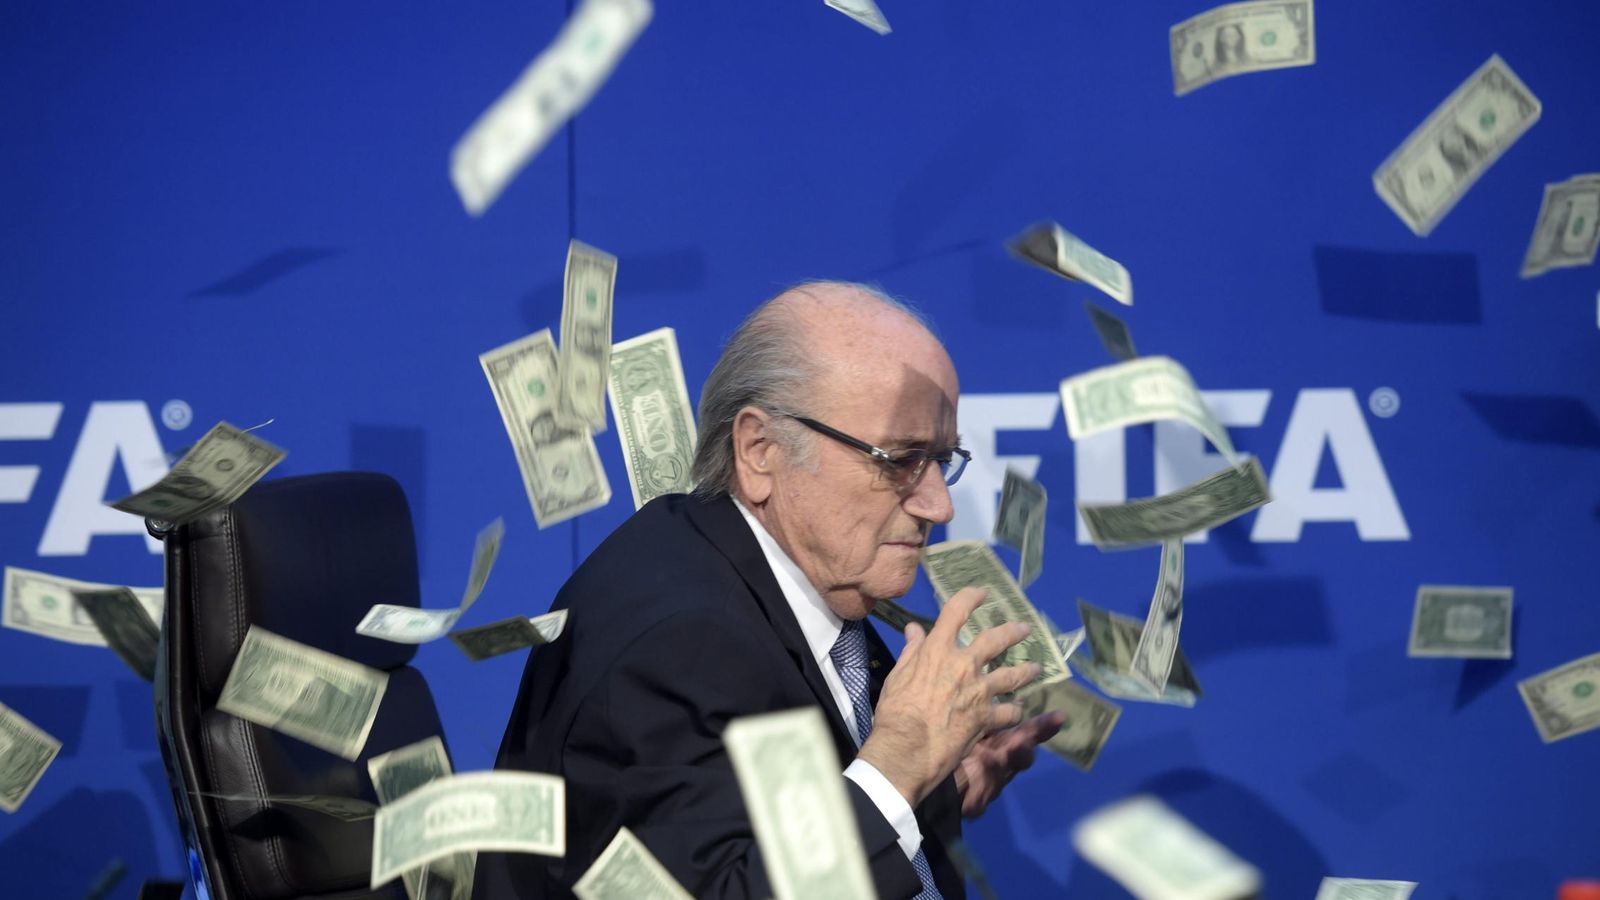 Foto: Blatter, en el momento en que le lanzaron los billetes (Efe)